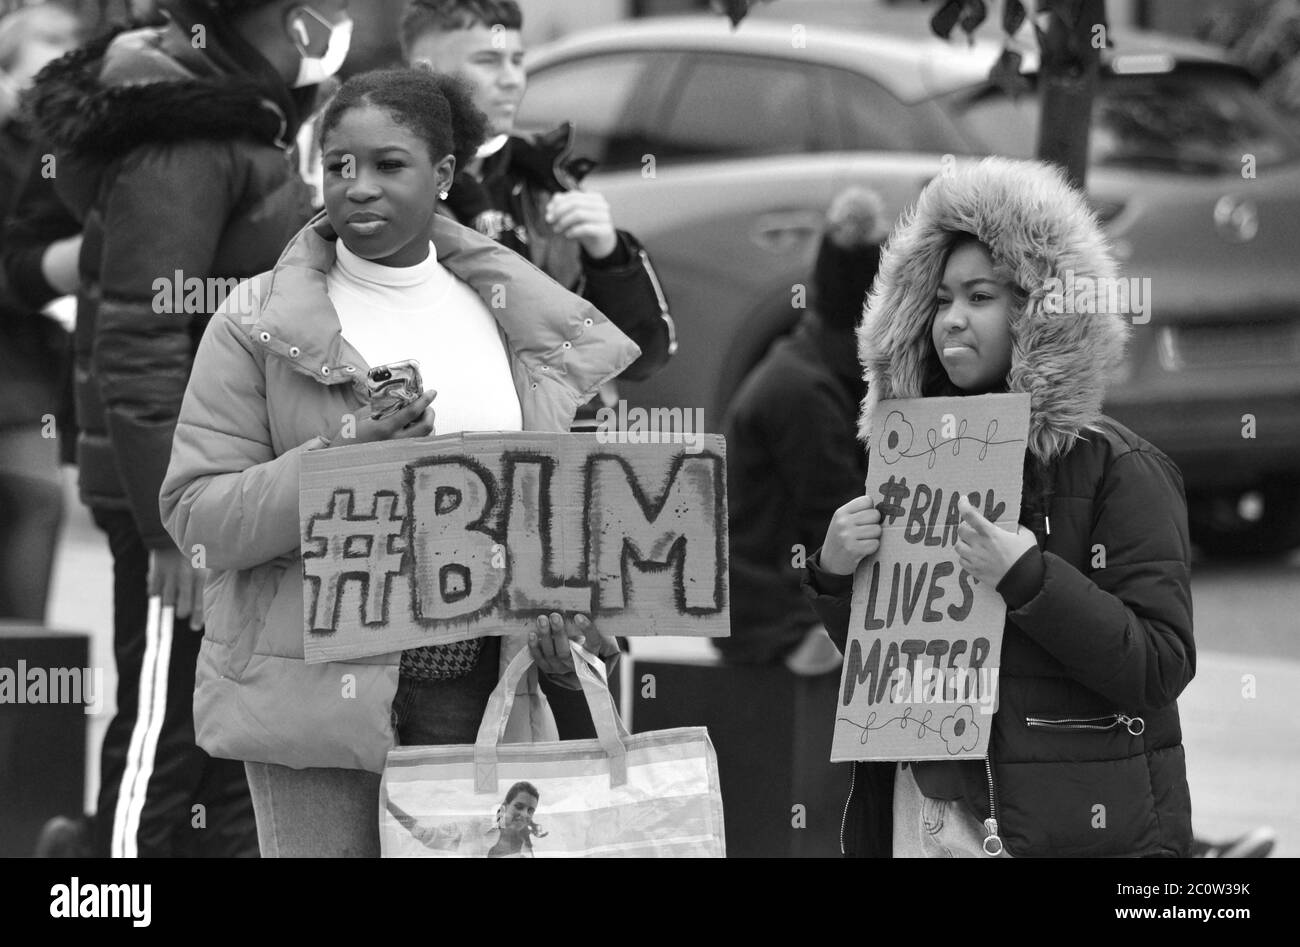 Deux sœurs noires qui assistaient à une vie noire sont importantes pour protester Swindon au Royaume-Uni en 2020 Banque D'Images